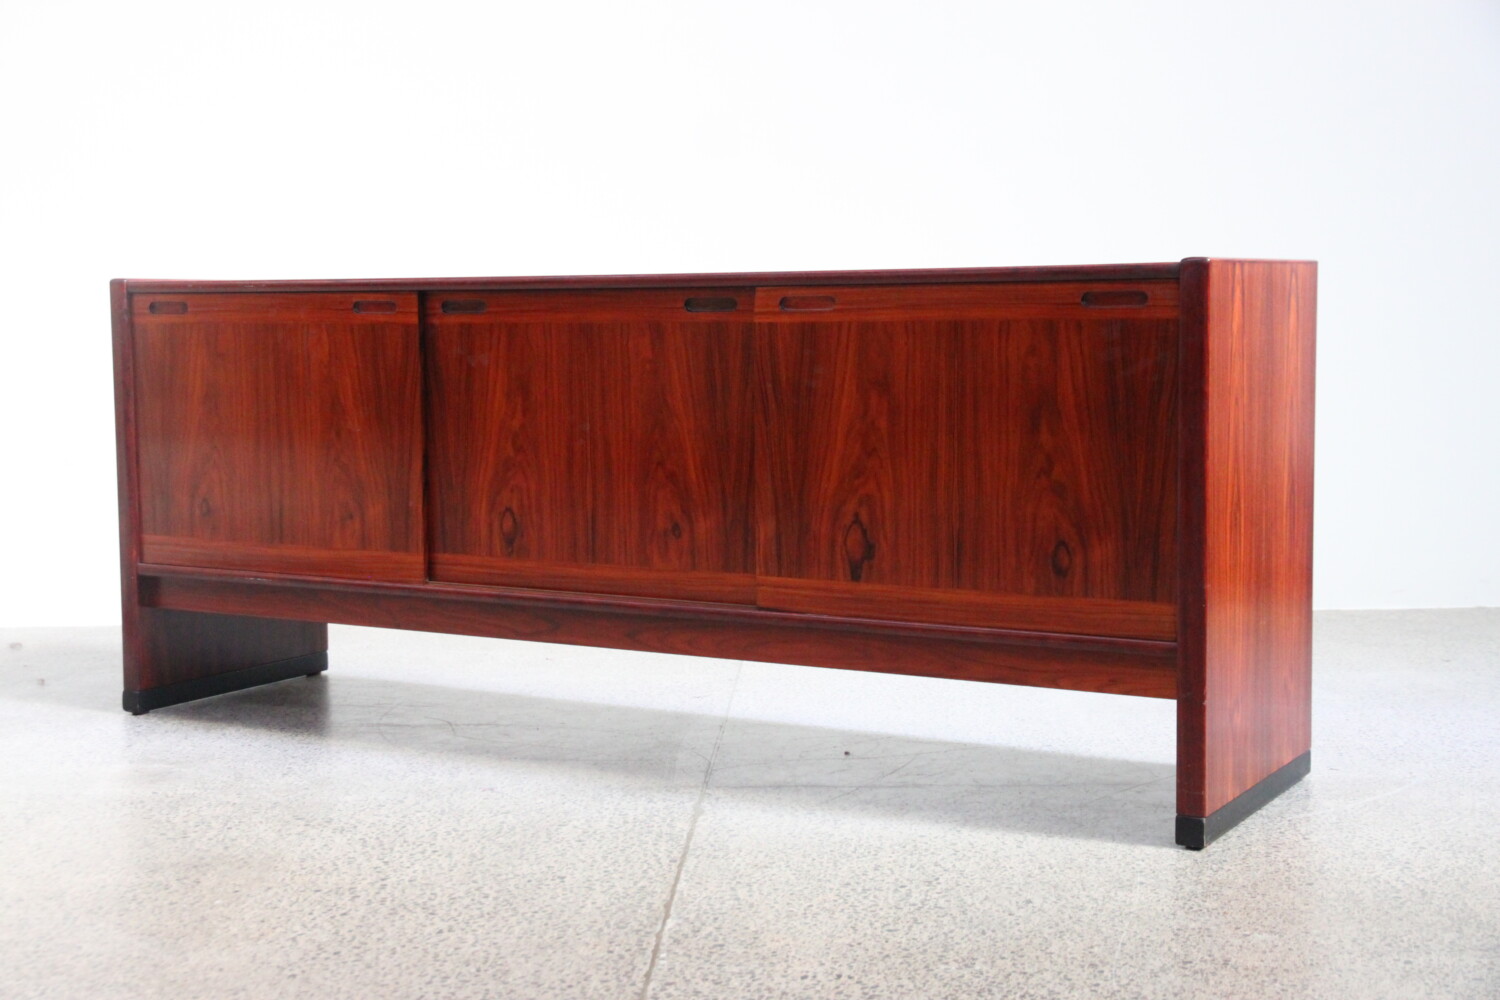 Rosewood Sideboard by Skovby sold